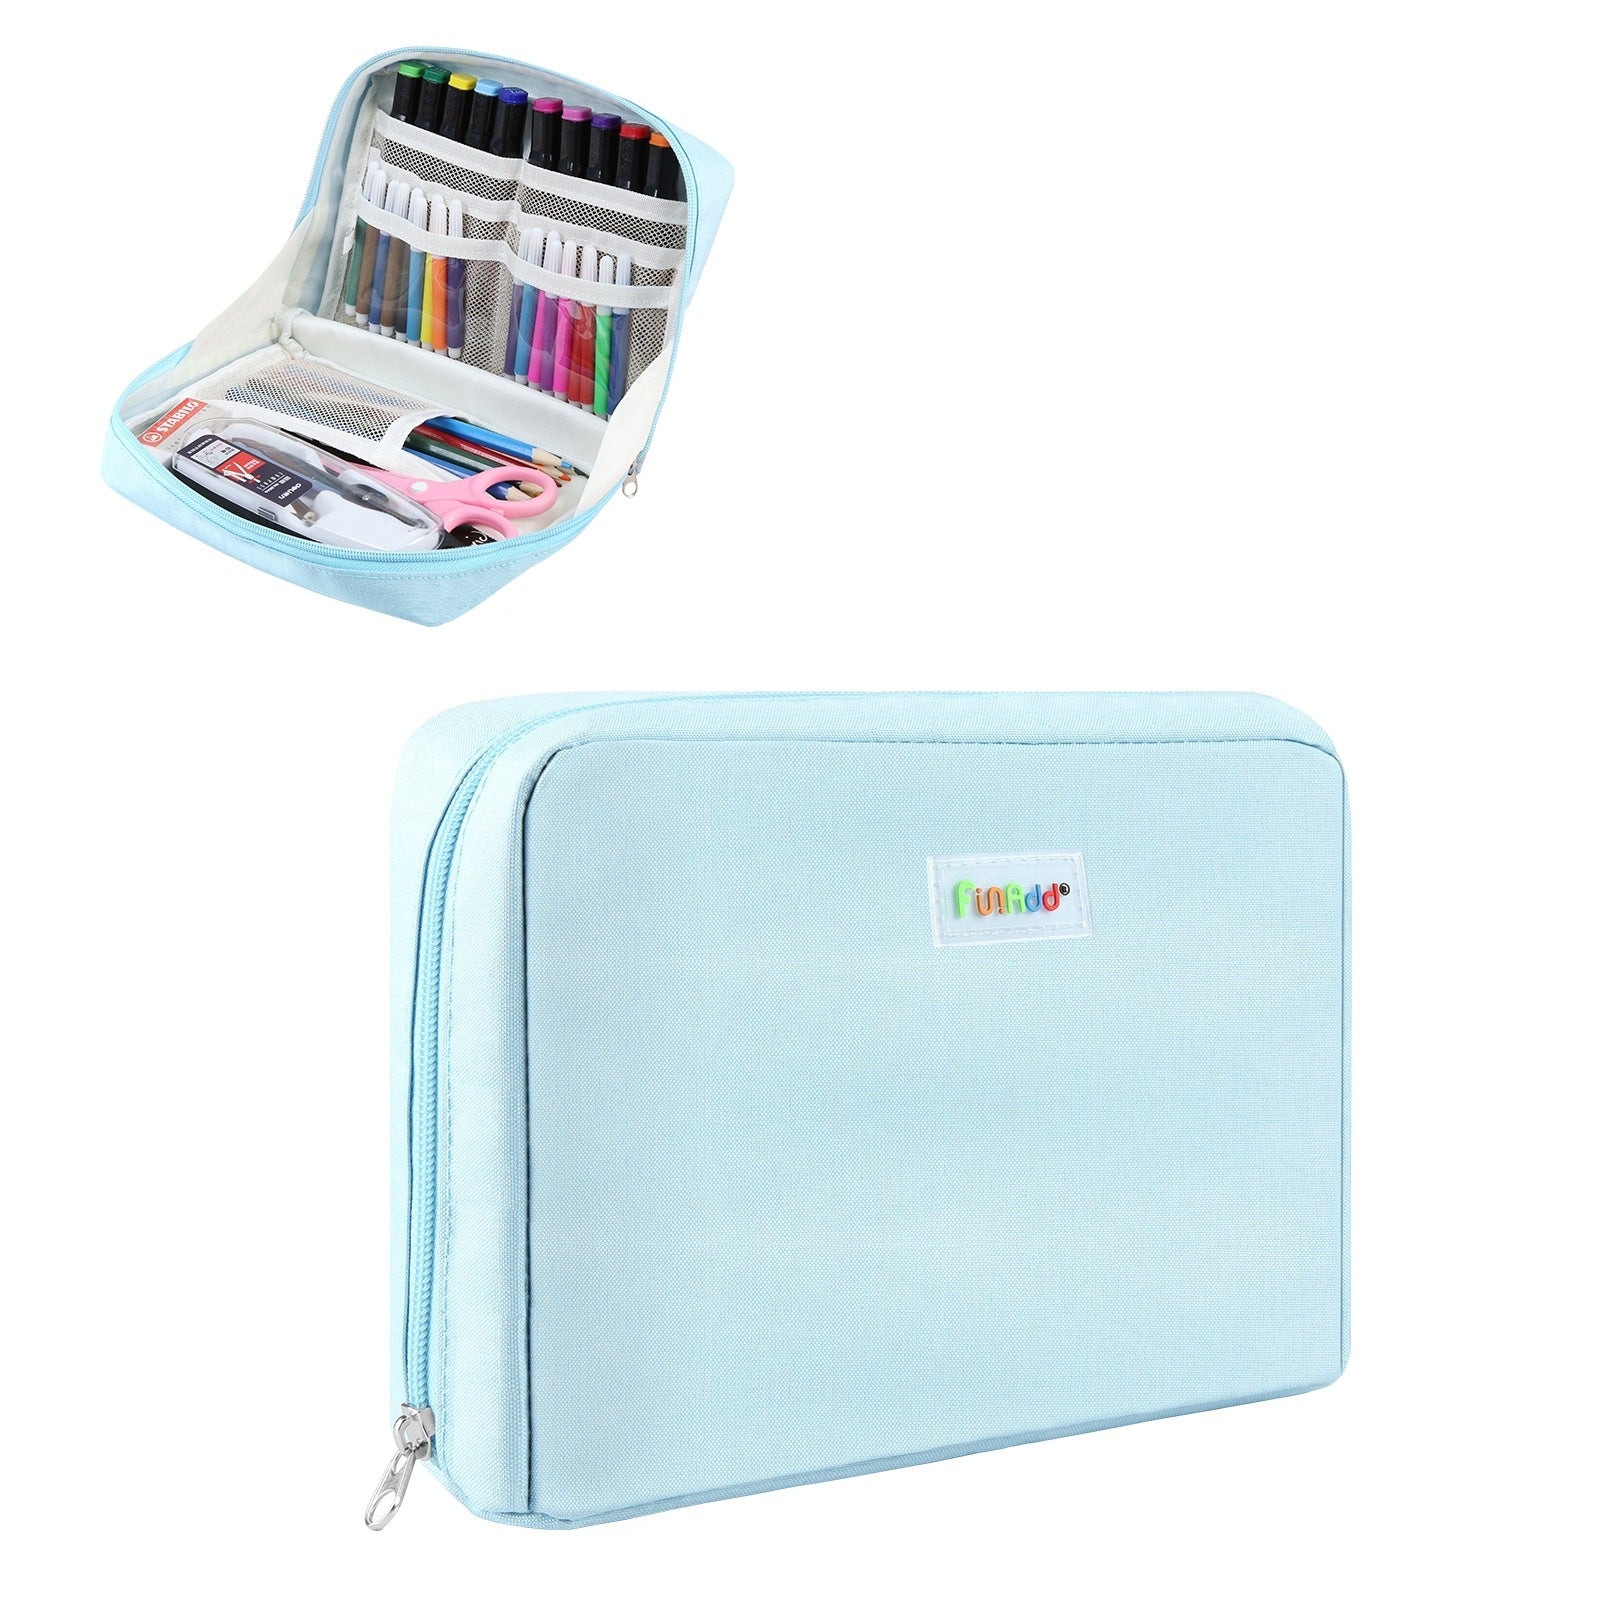 AddFun Portable Pencil Bag,Large Pencil Case for Teen Boys Girls